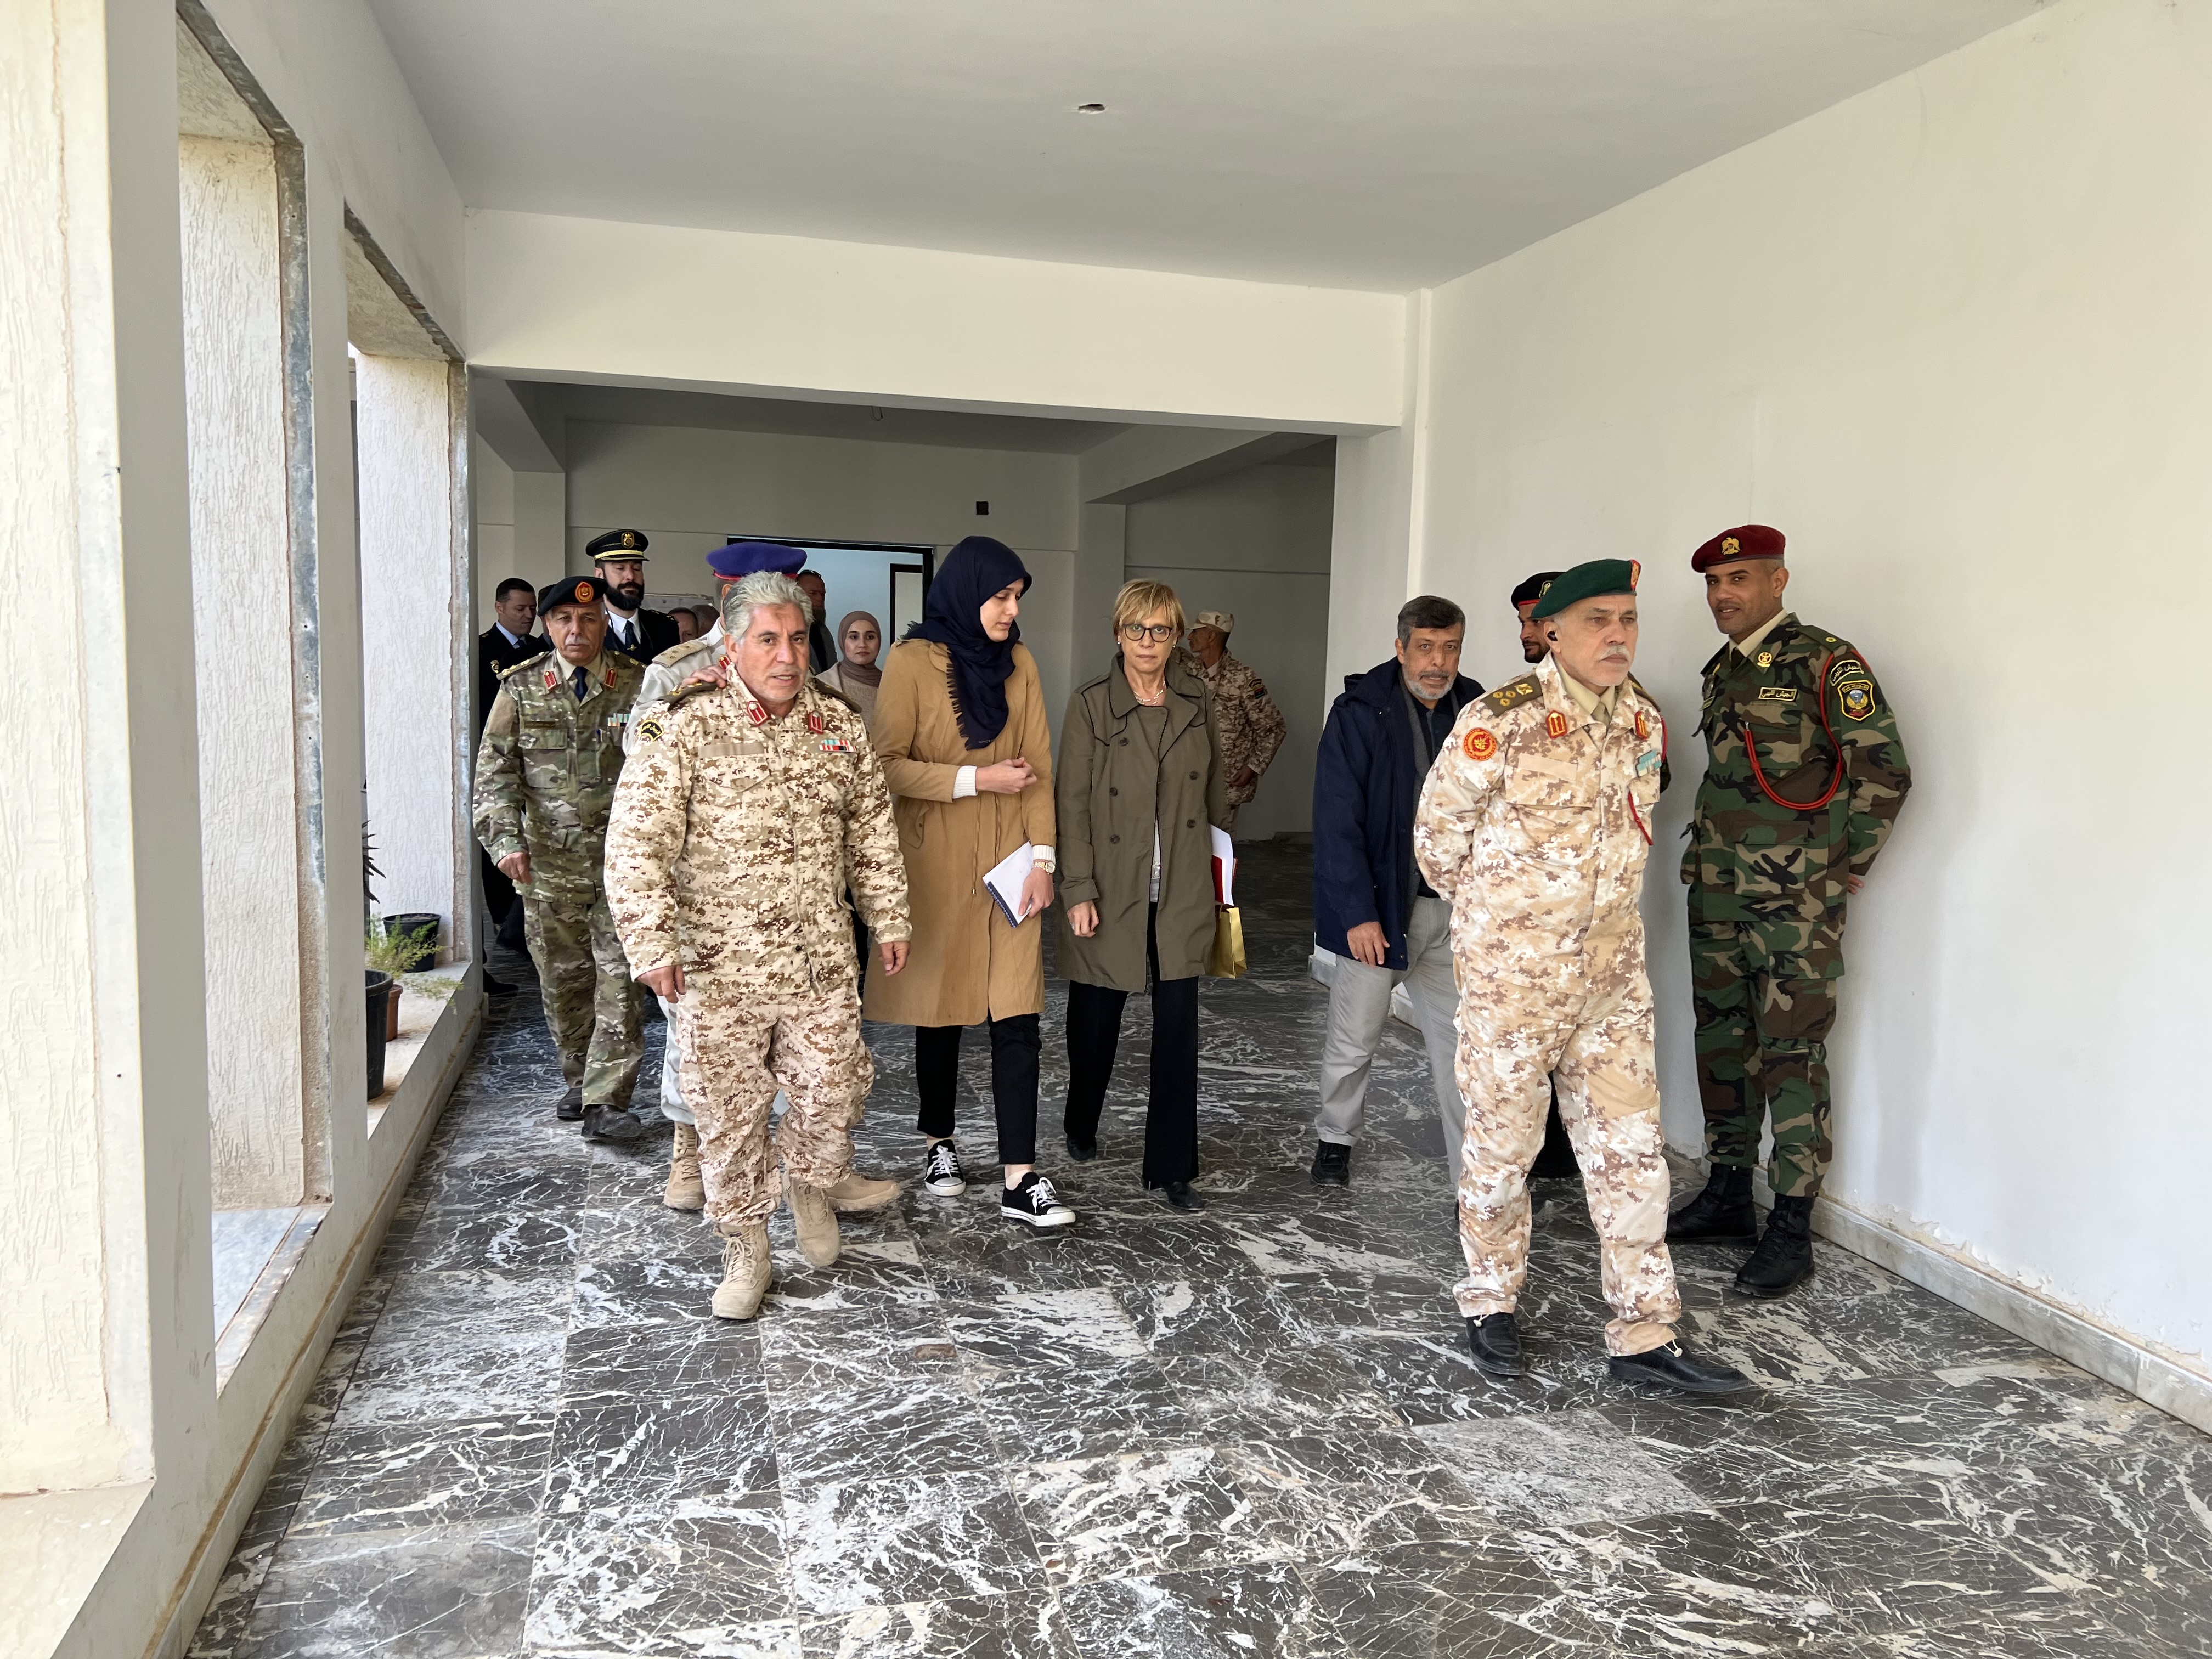  رئيسة بعثة (يوبام) تلتقي بمديري حرس الحدود الليبيين.